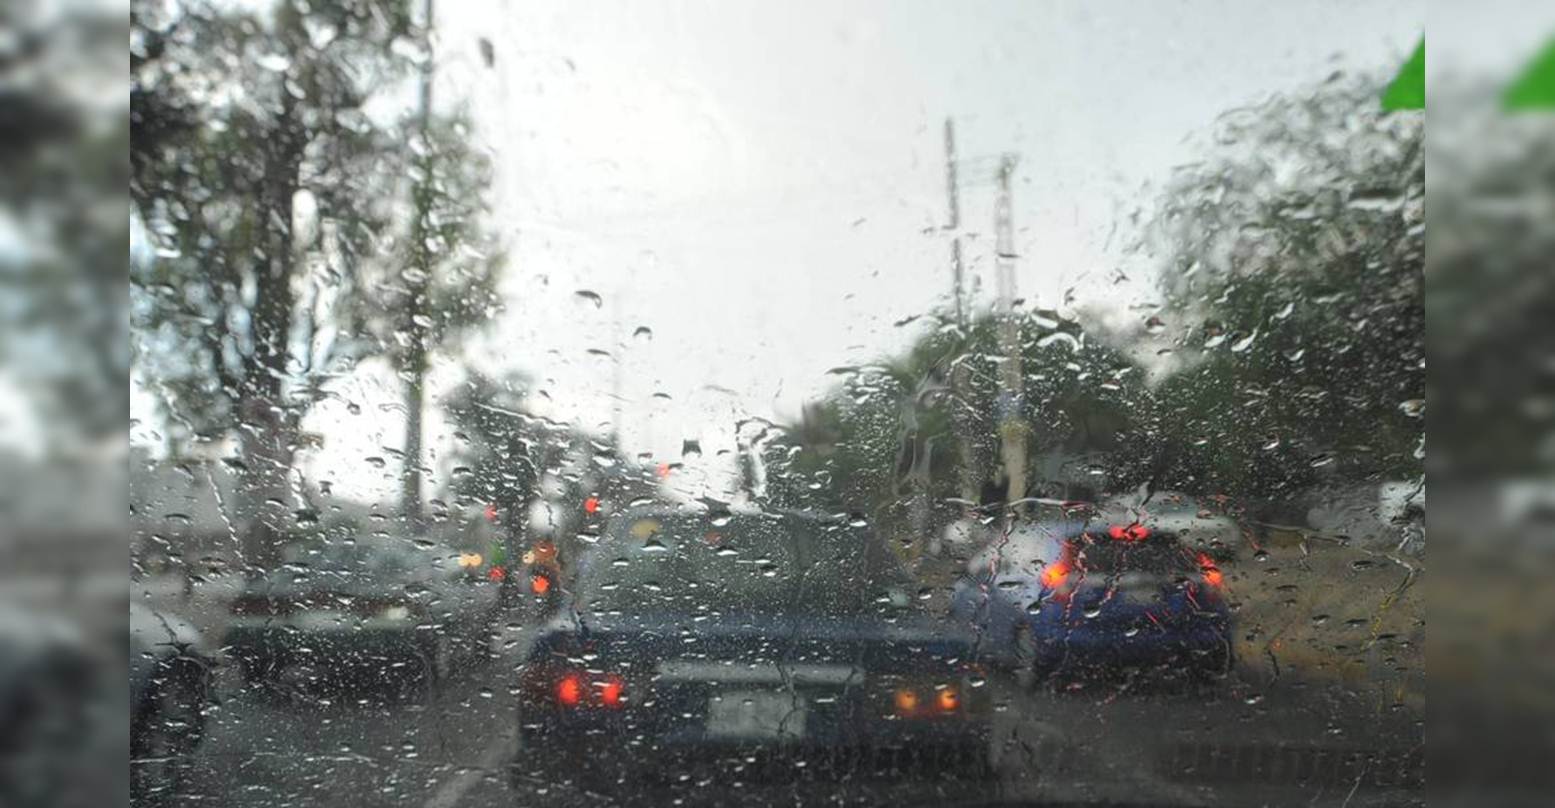 ¡EL CLIMA HOY! Inameh informó Onda tropical N°2 causará lluvias en algunas zonas del país #23May